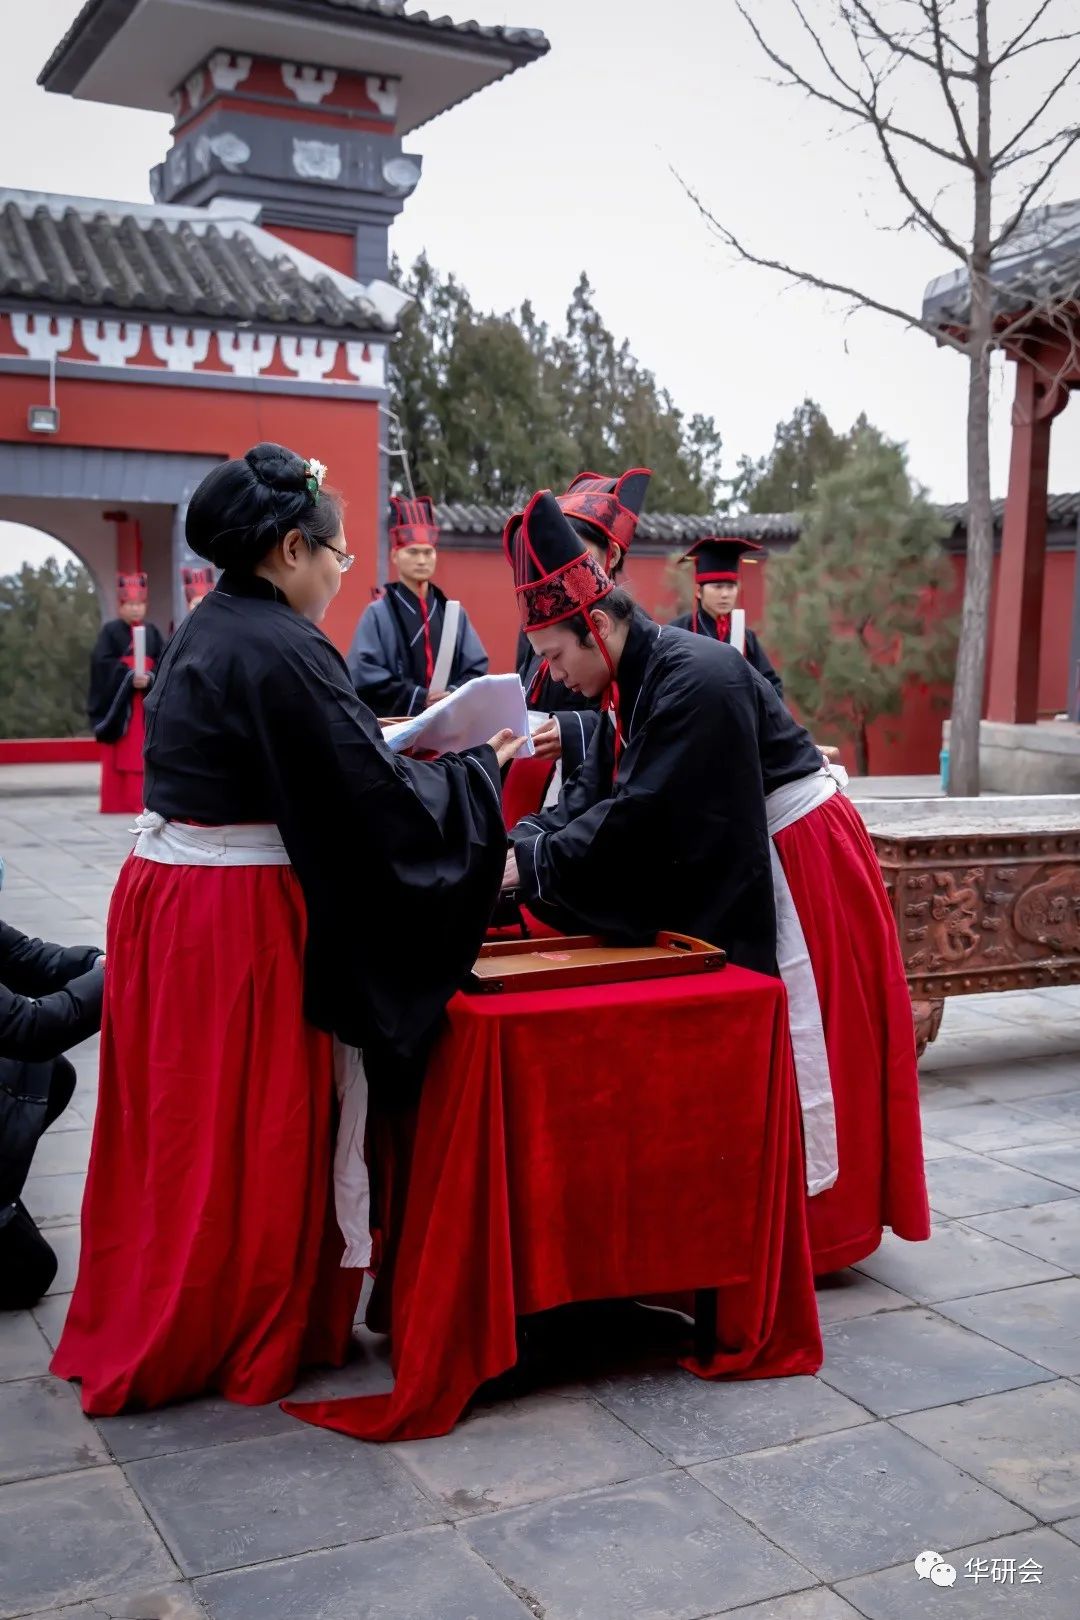 第六届汉服汉礼公祭轩辕黄帝大典在北京平谷轩辕庙举行